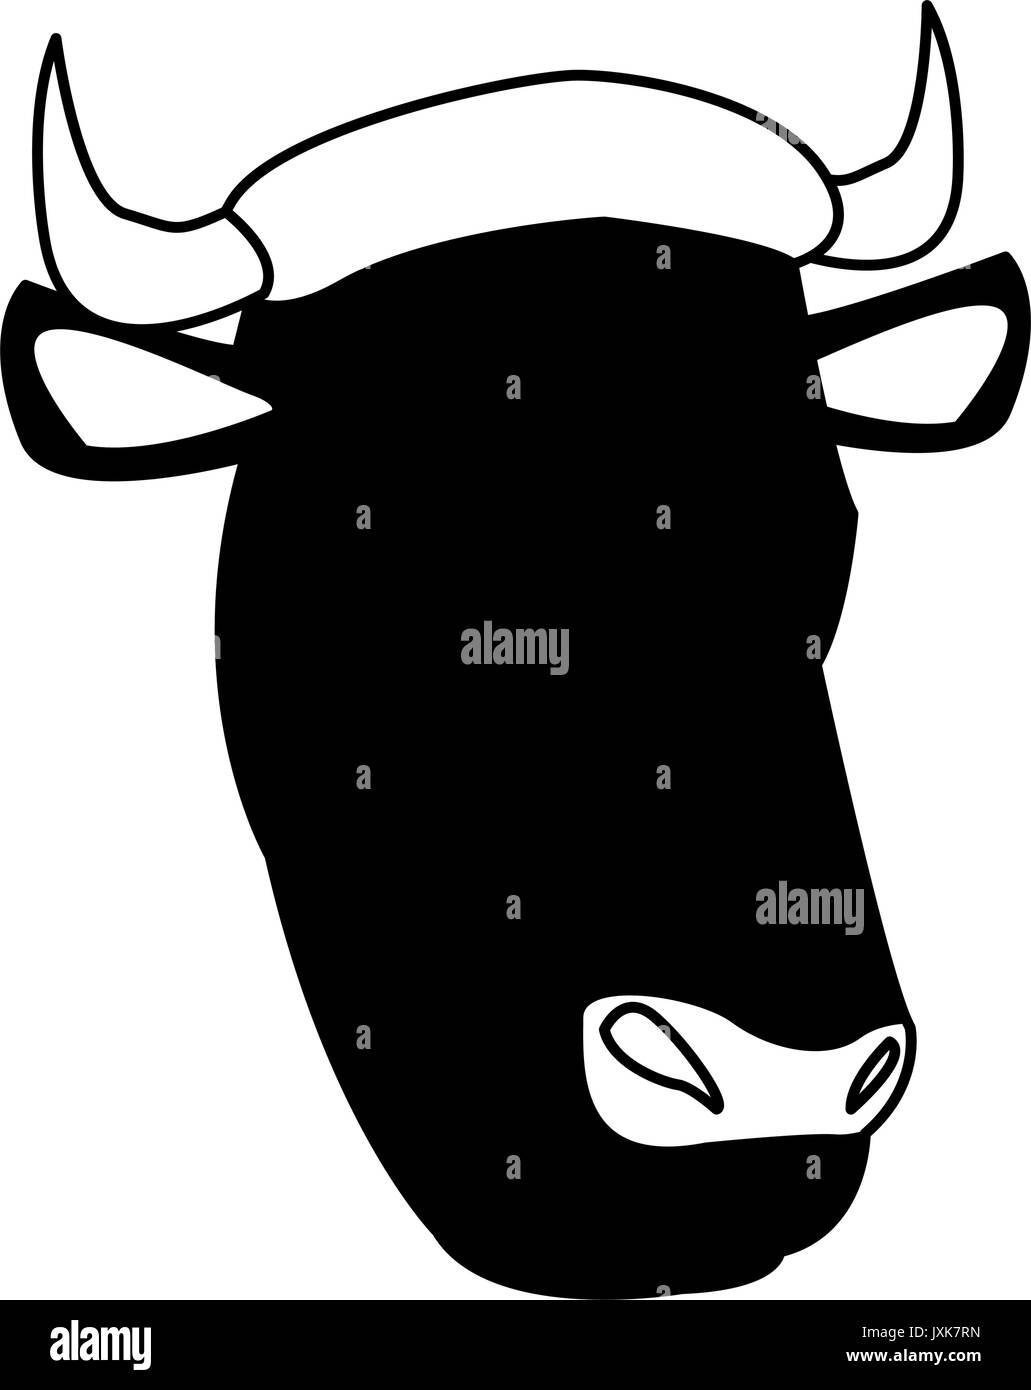 cow head animal farm agriculture fauna Stock Vector